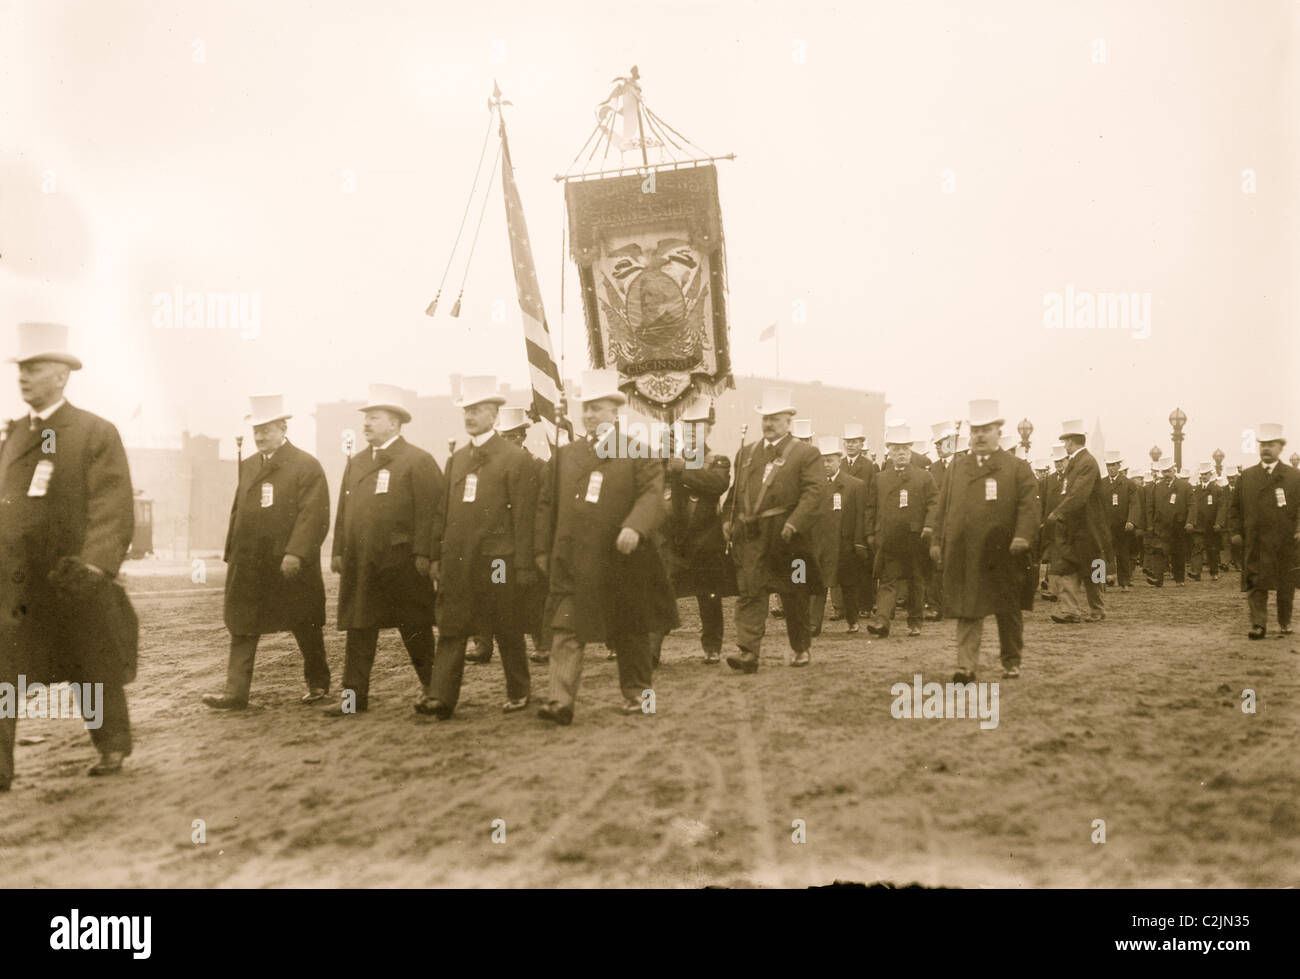 Défilé Inaugural Taft, J.G. Blaine marcher avant de Young Men's Club of Cincinnati, Washington, D.C. Banque D'Images